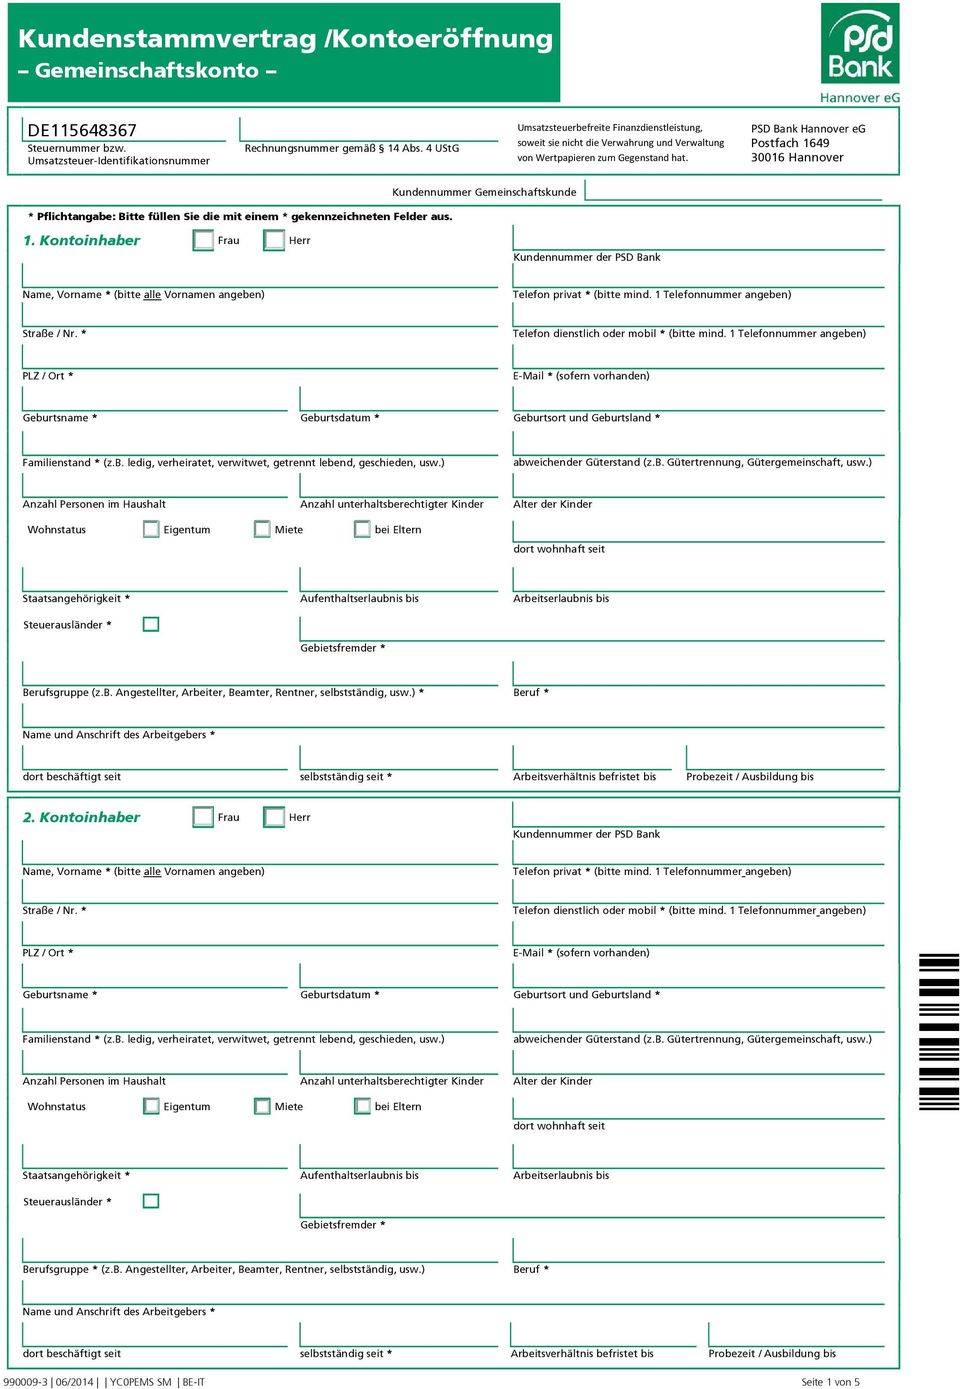 PSD Bank Hannover eg Postfach 1649 30016 Hannover * Pflichtangabe: Bitte füllen Sie die mit einem * gekennzeichneten Felder aus. Kundennummer Gemeinschaftskunde 1.